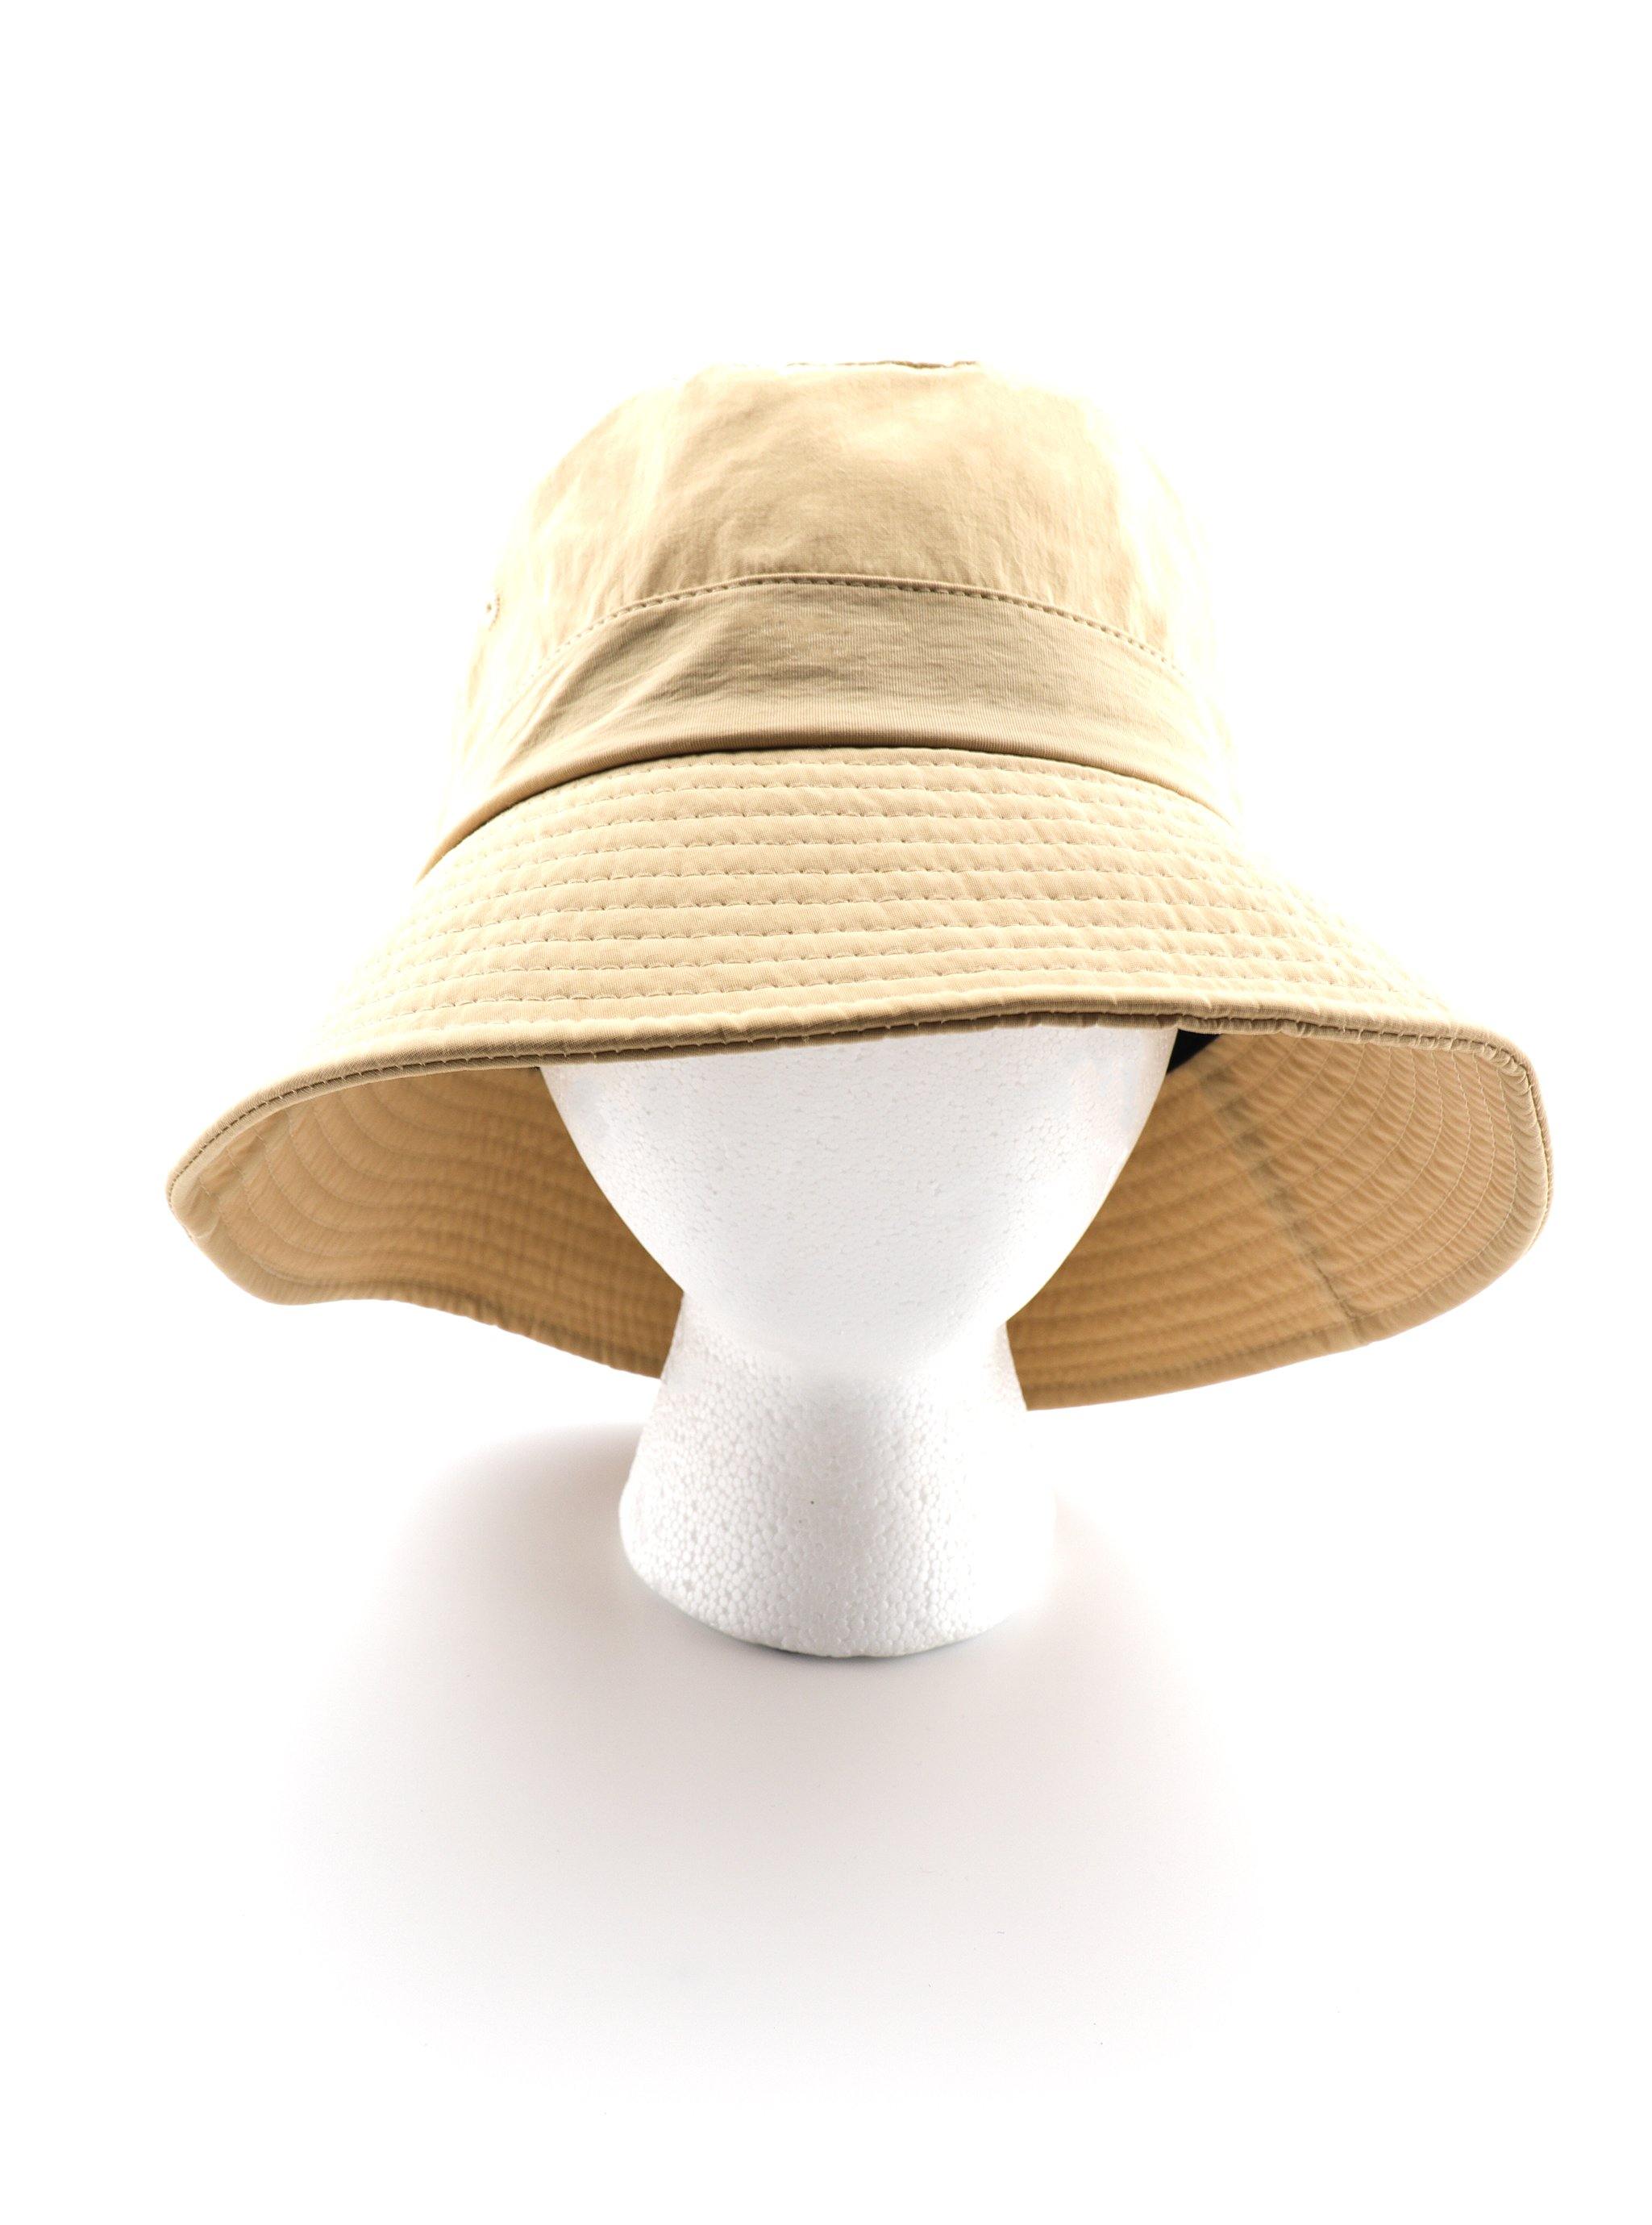 HENDRIX BUCKET HAT - Simplique Mode